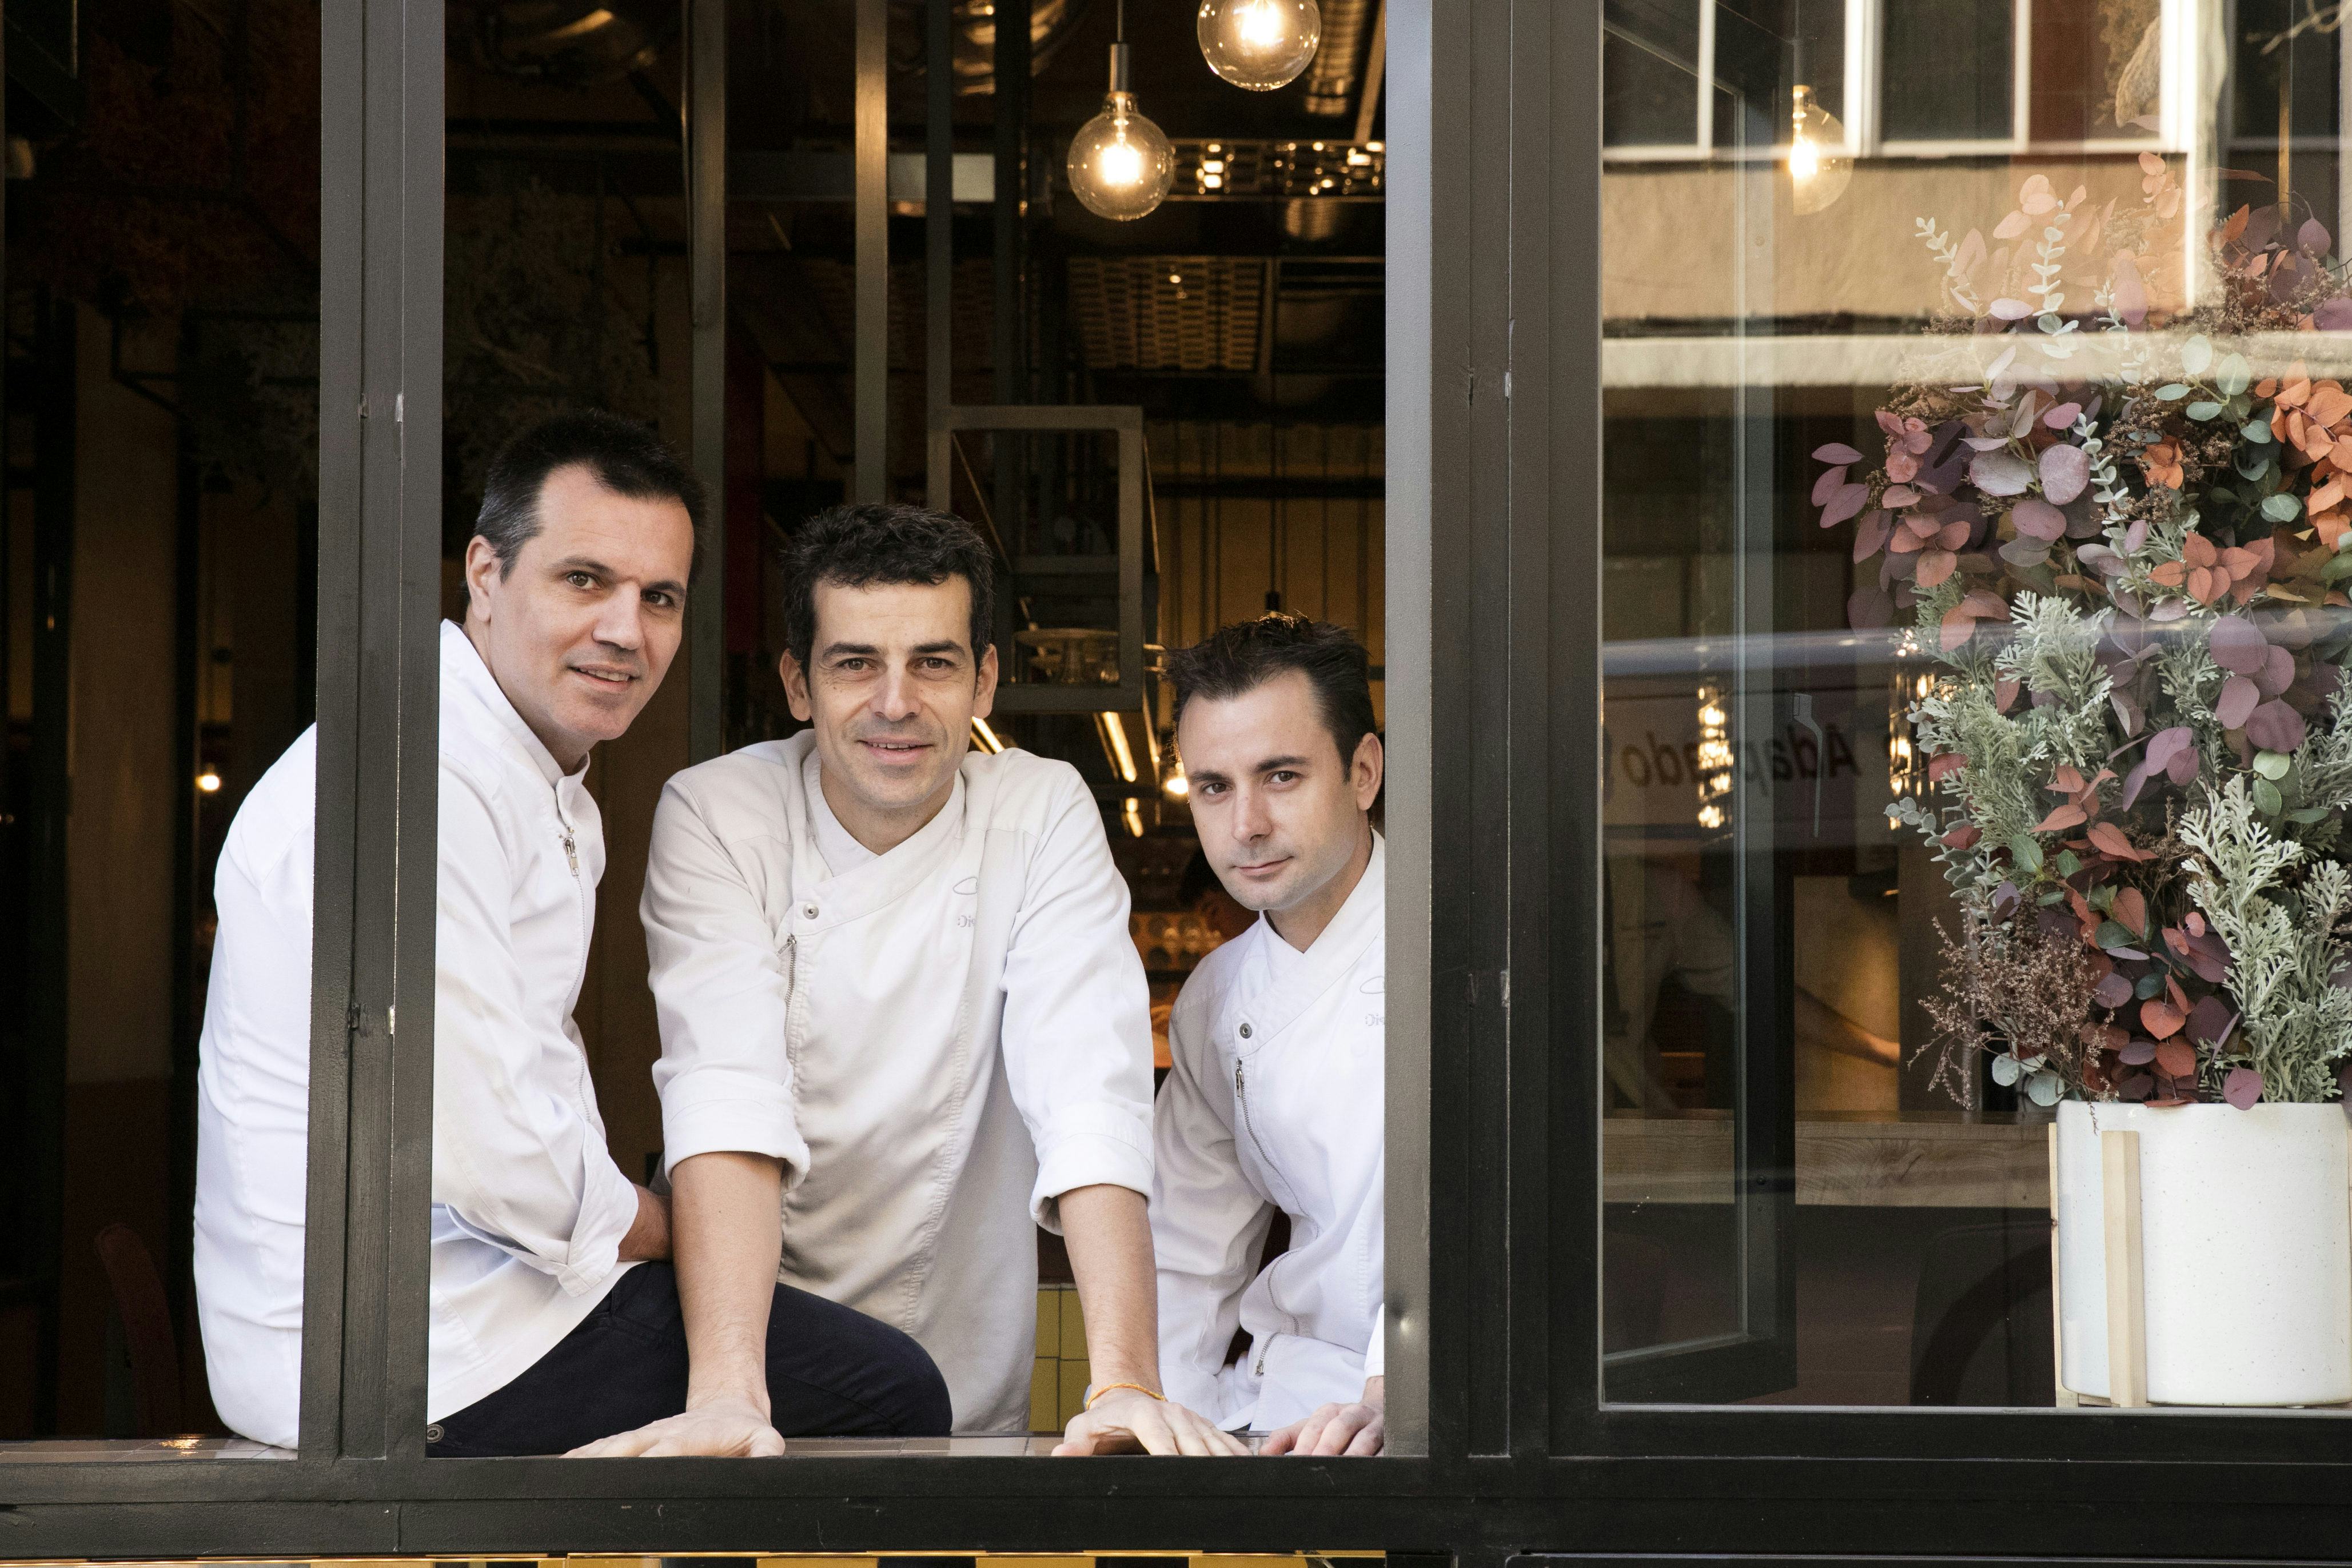 Vlnr. Oriol Castro, Mateu Casañas en Eduard Xatruch, chefs en eigenaren van Disfrutar Barcelona. (c) Joan Valera.